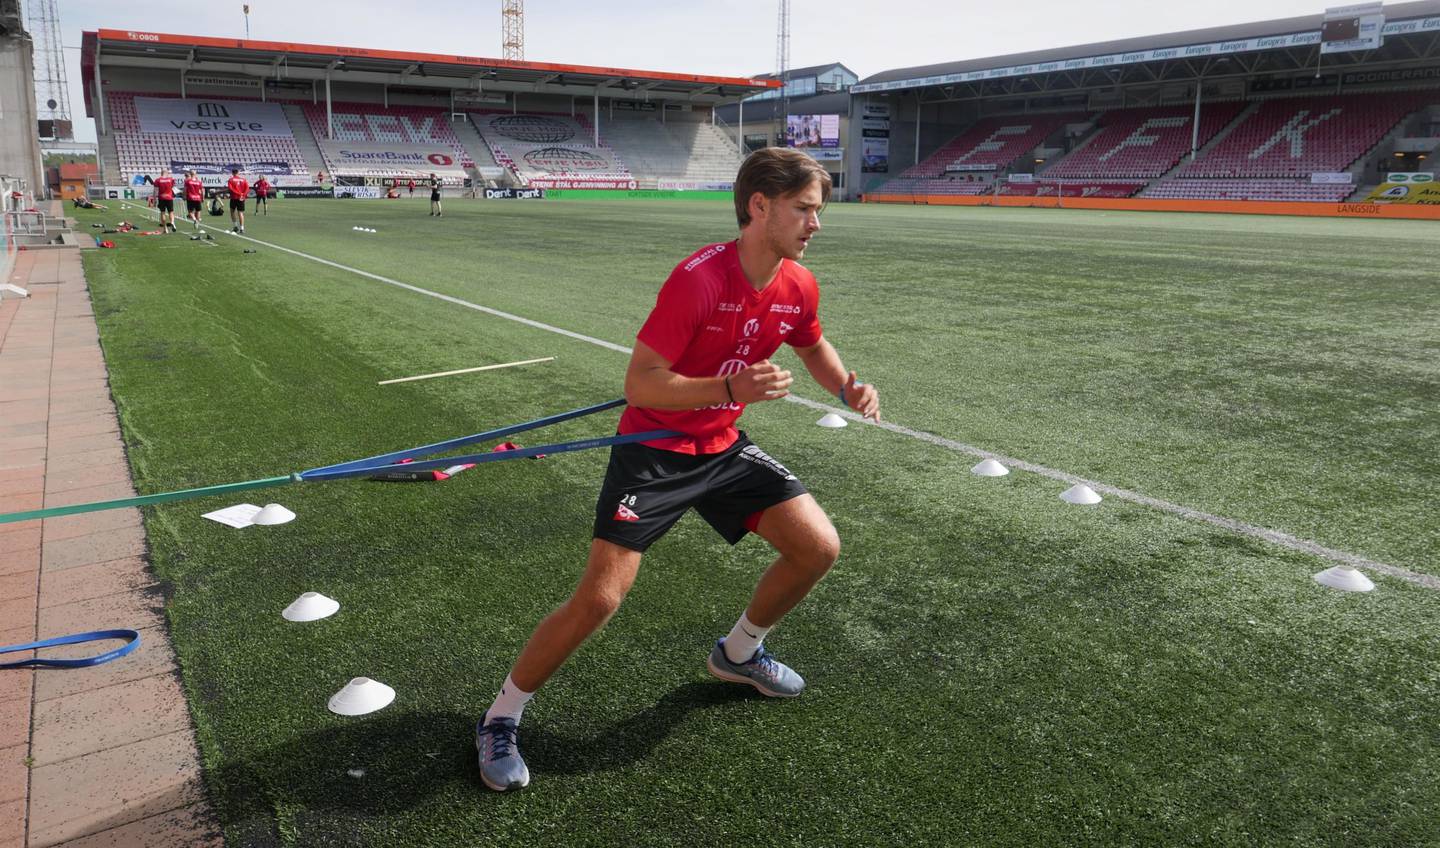 Tomas Lopez Borgersen mener han har hatt jevn utvikling som fotballspiller fra barndomsårene først og fremst som følge av dedikasjon og innsats i treningsarbeid og livsstil.